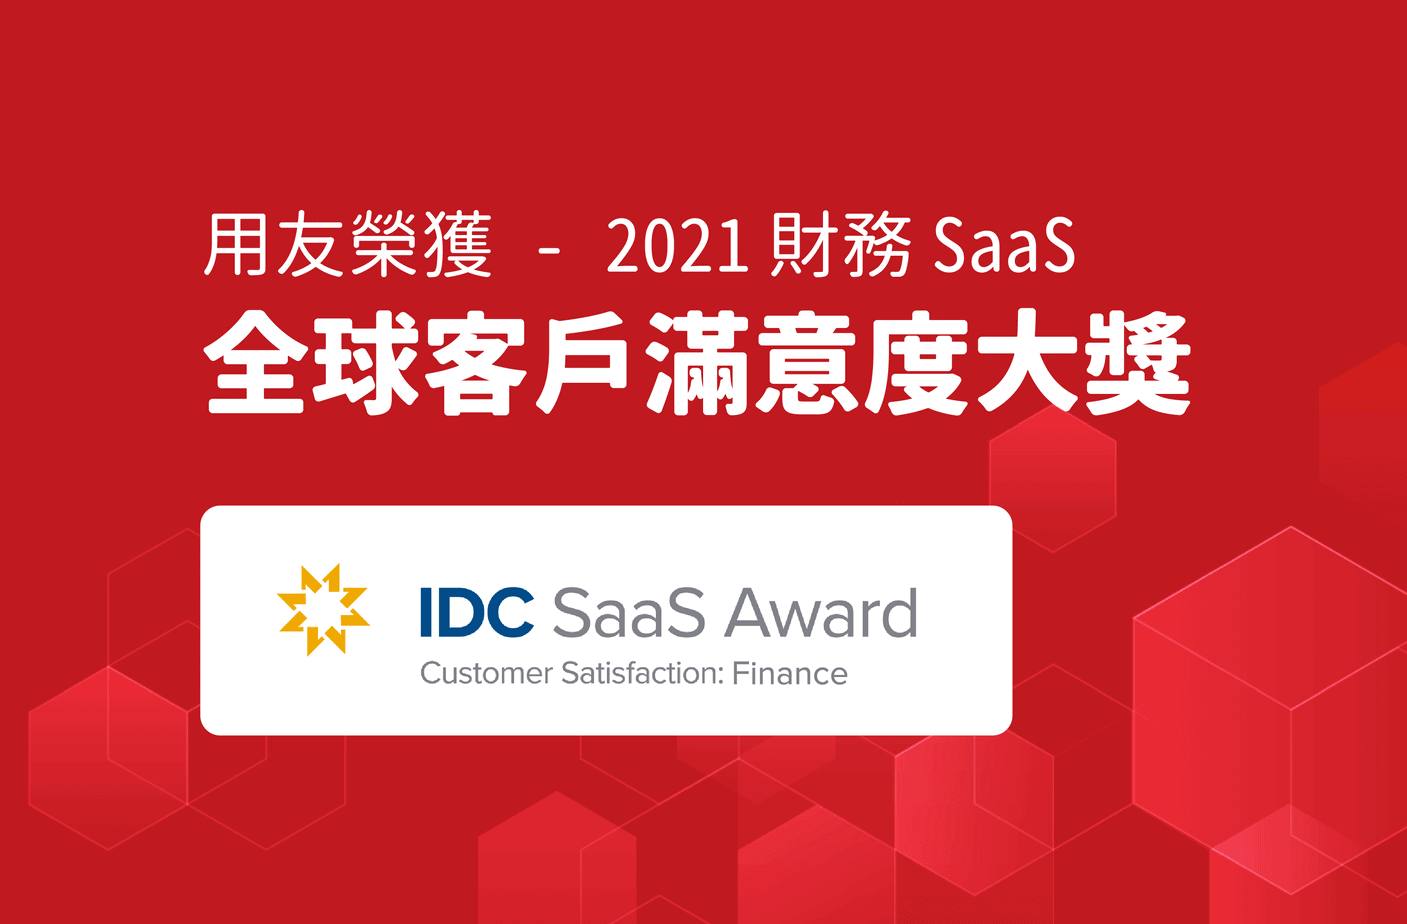 用友-榮獲-IDC-2021-財務-SaaS-全球滿意度大獎